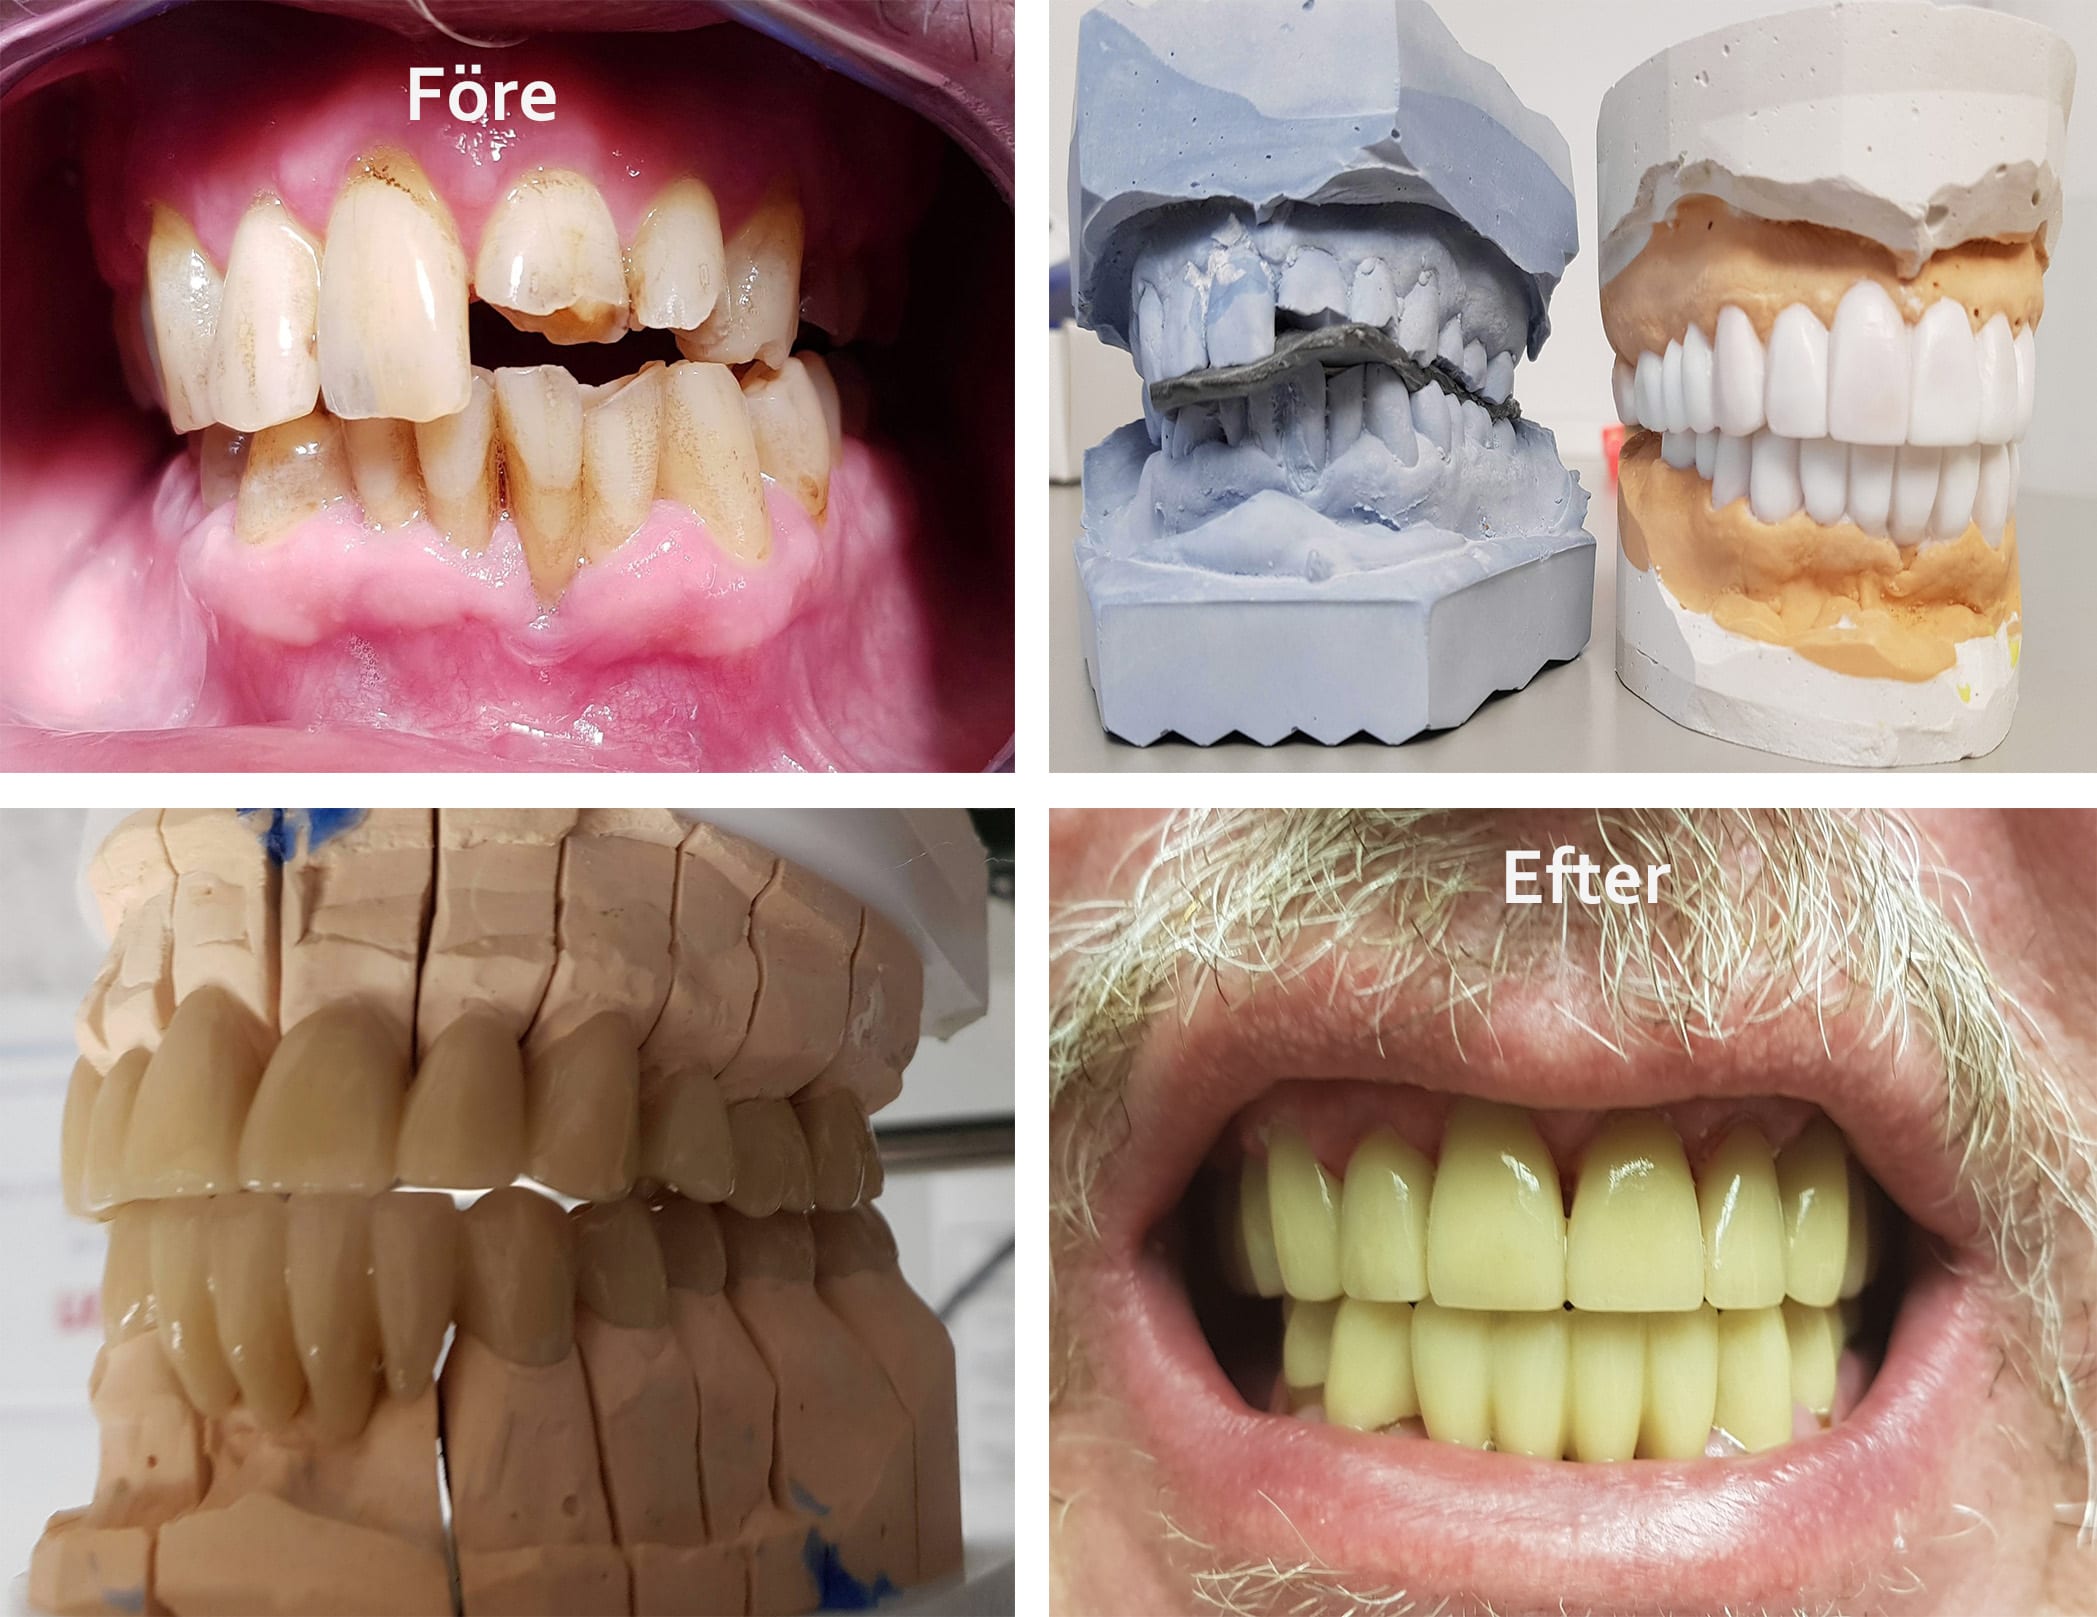 Före och efter bilder på tänder som blivit fixade